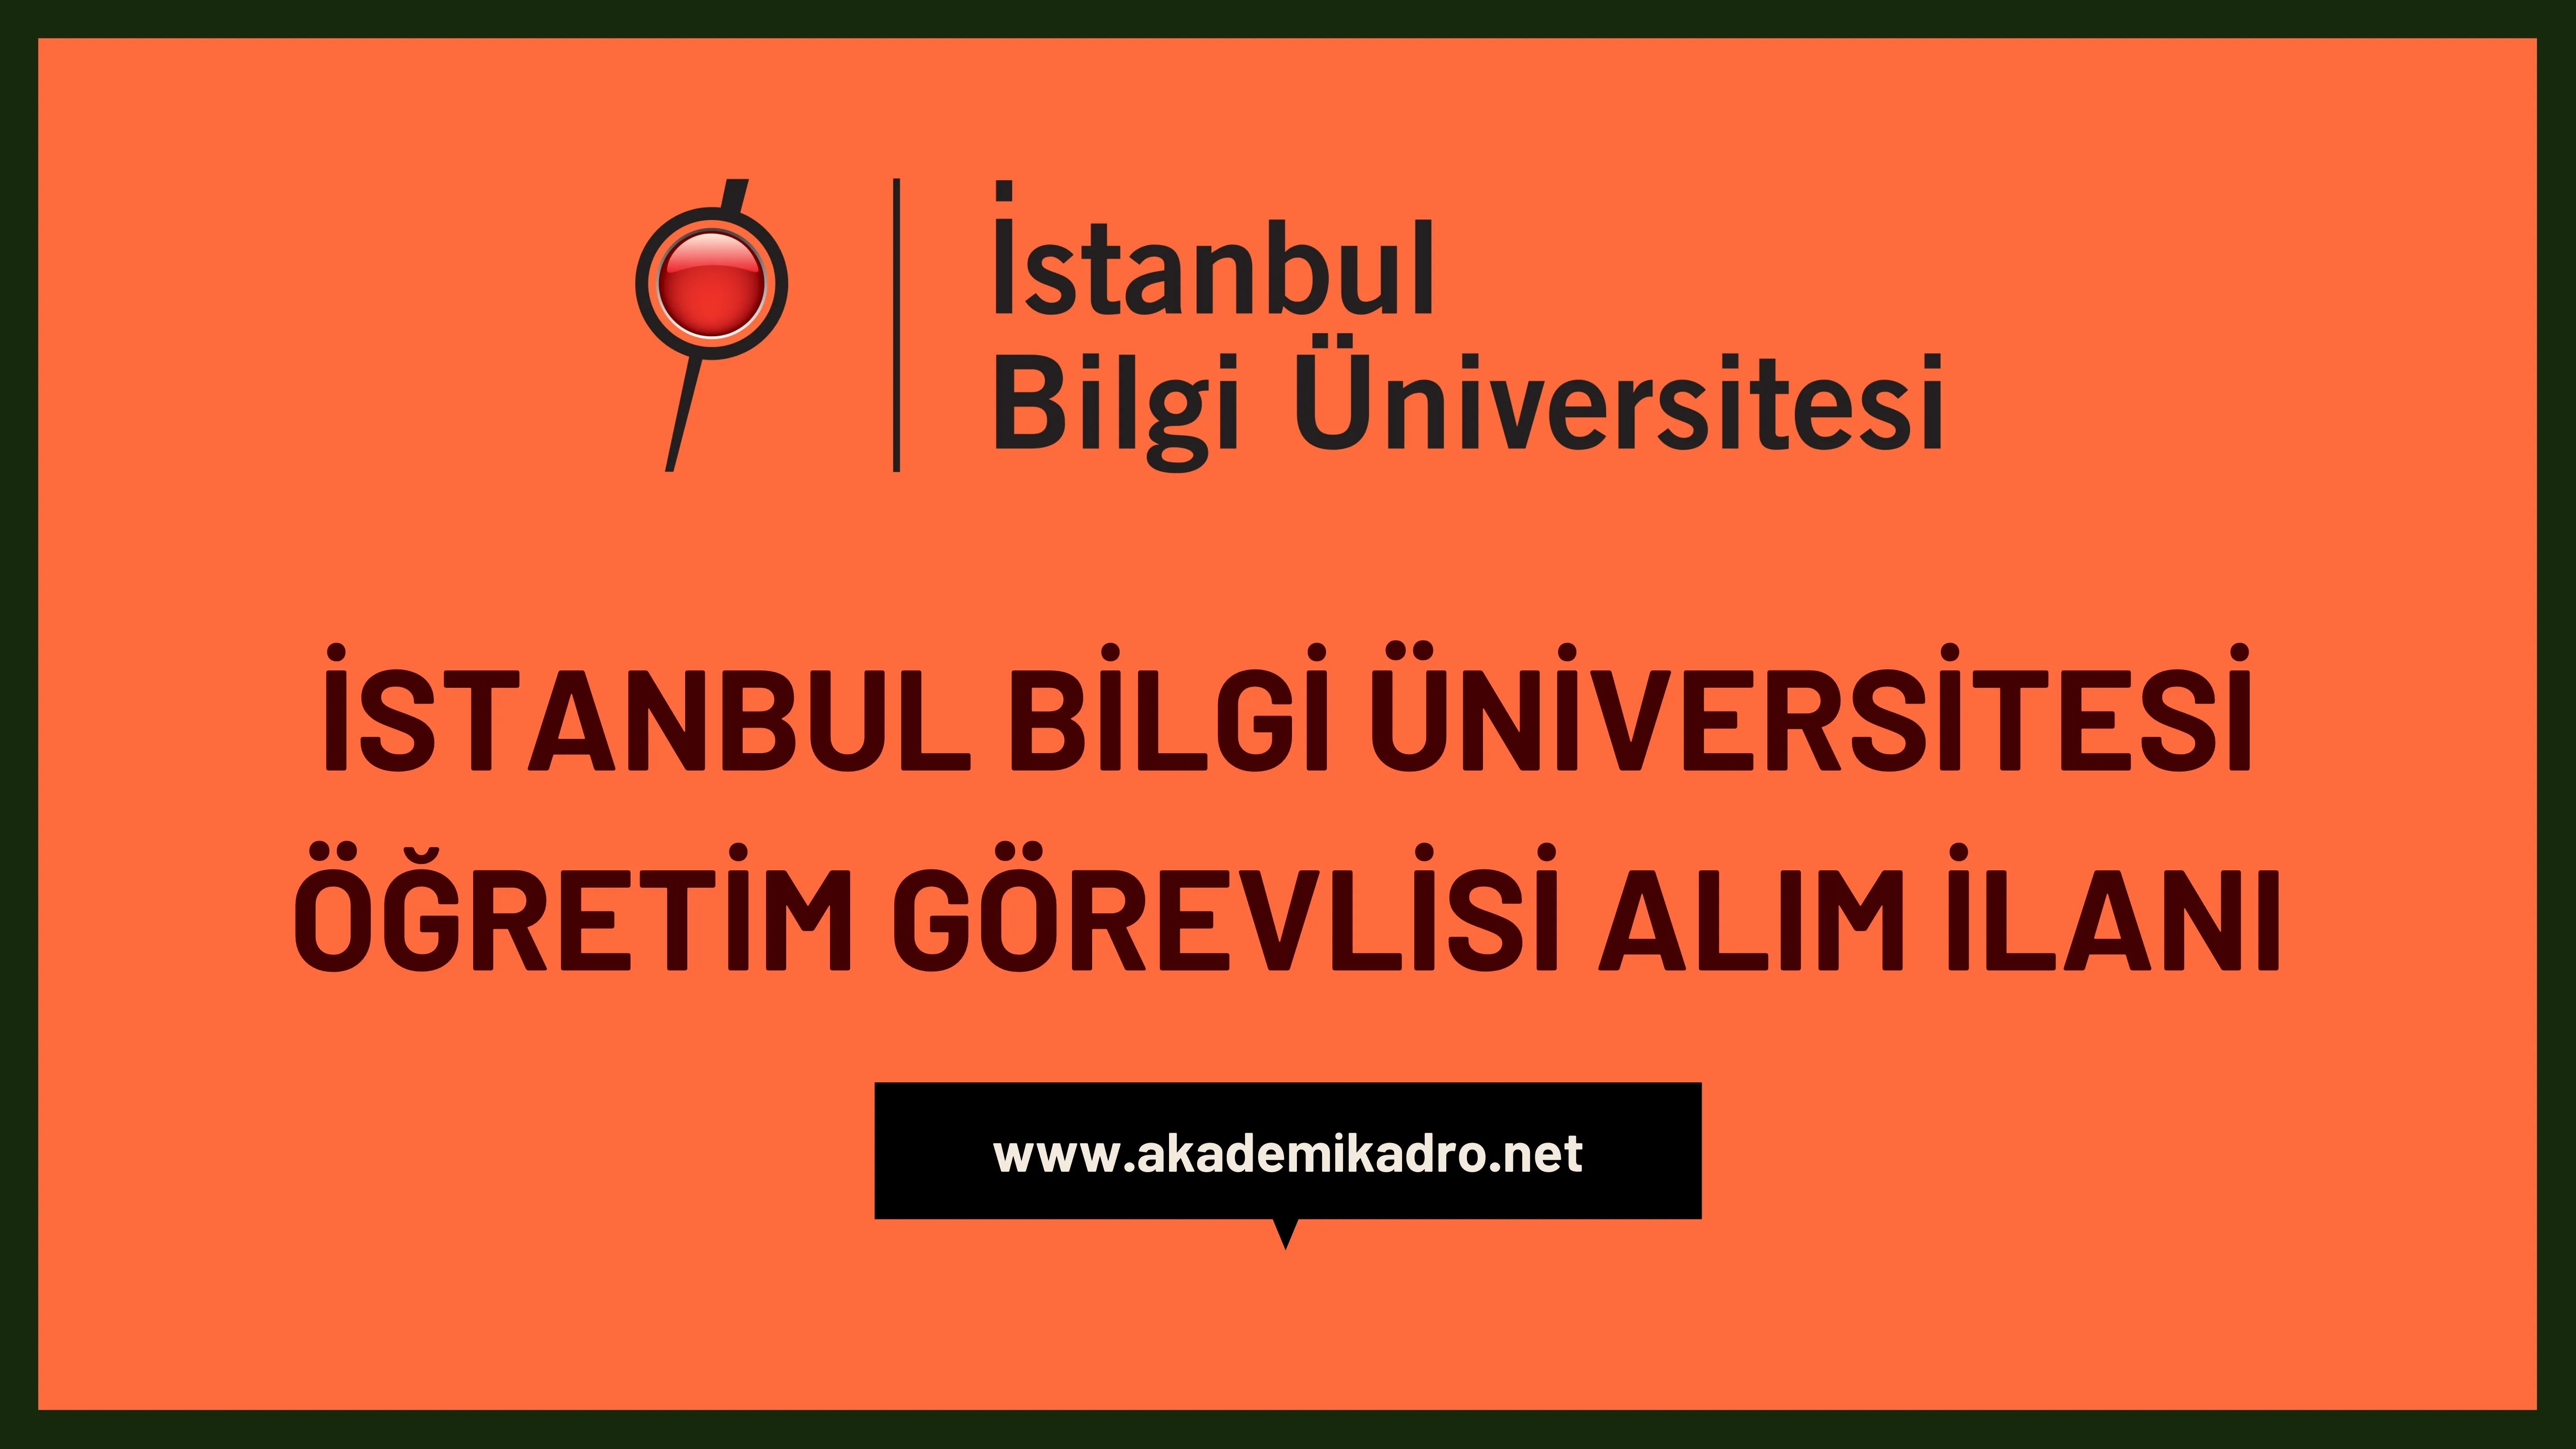 İstanbul Bilgi Üniversitesi 15 Öğretim üyesi, 6 Araştırma görevlisi ve 3 Öğretim görevlisi alacaktır. Son başvuru tarihi 30 Kasım 2022